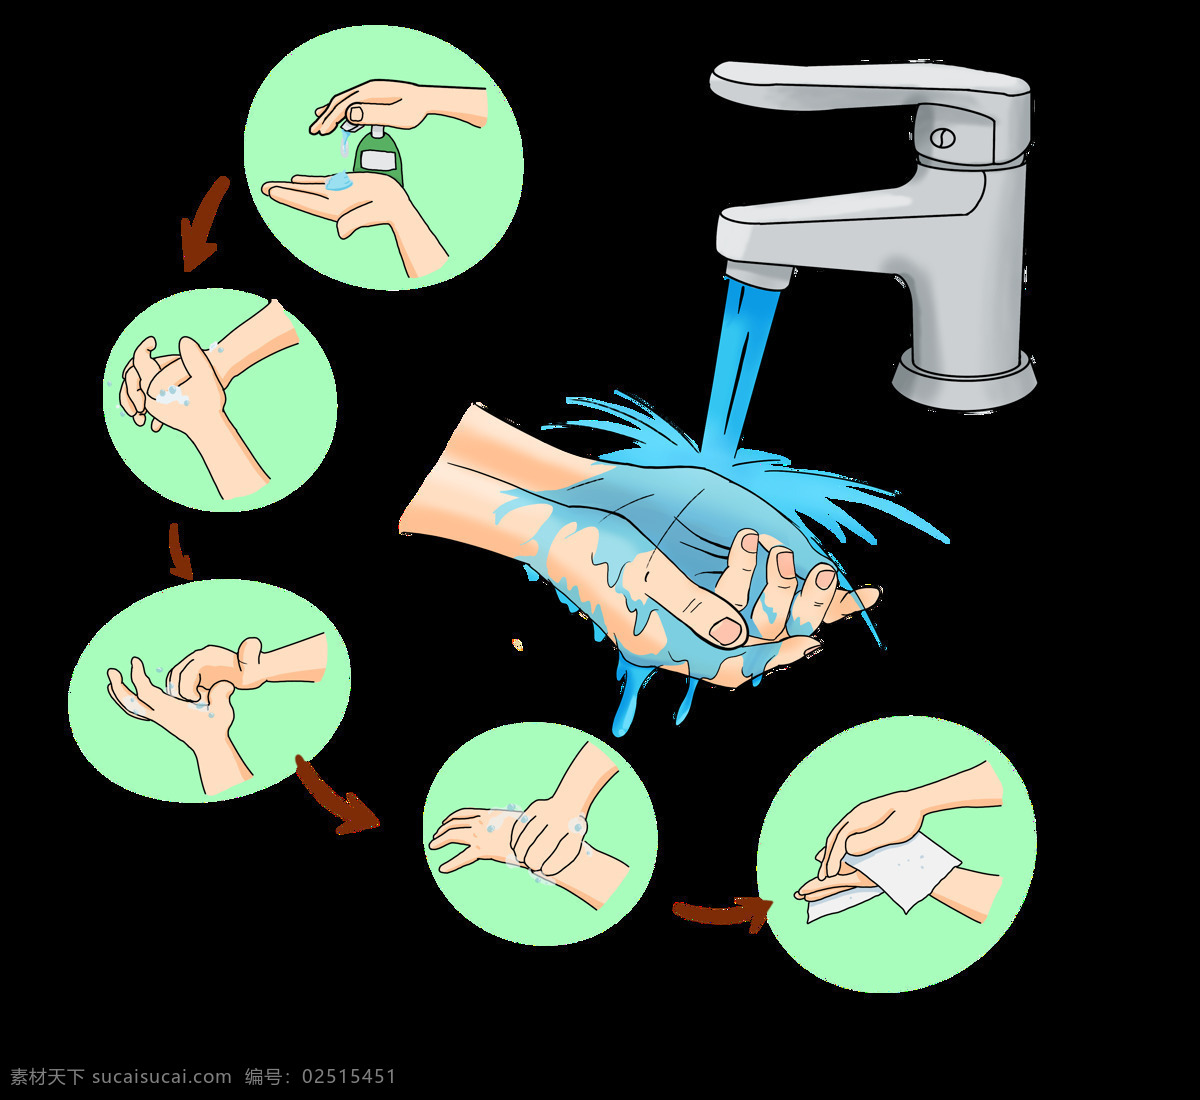 勤洗手漫画 勤洗手 漫画 卡通 手绘 宣传 洗手 讲卫生 动漫动画 动漫人物